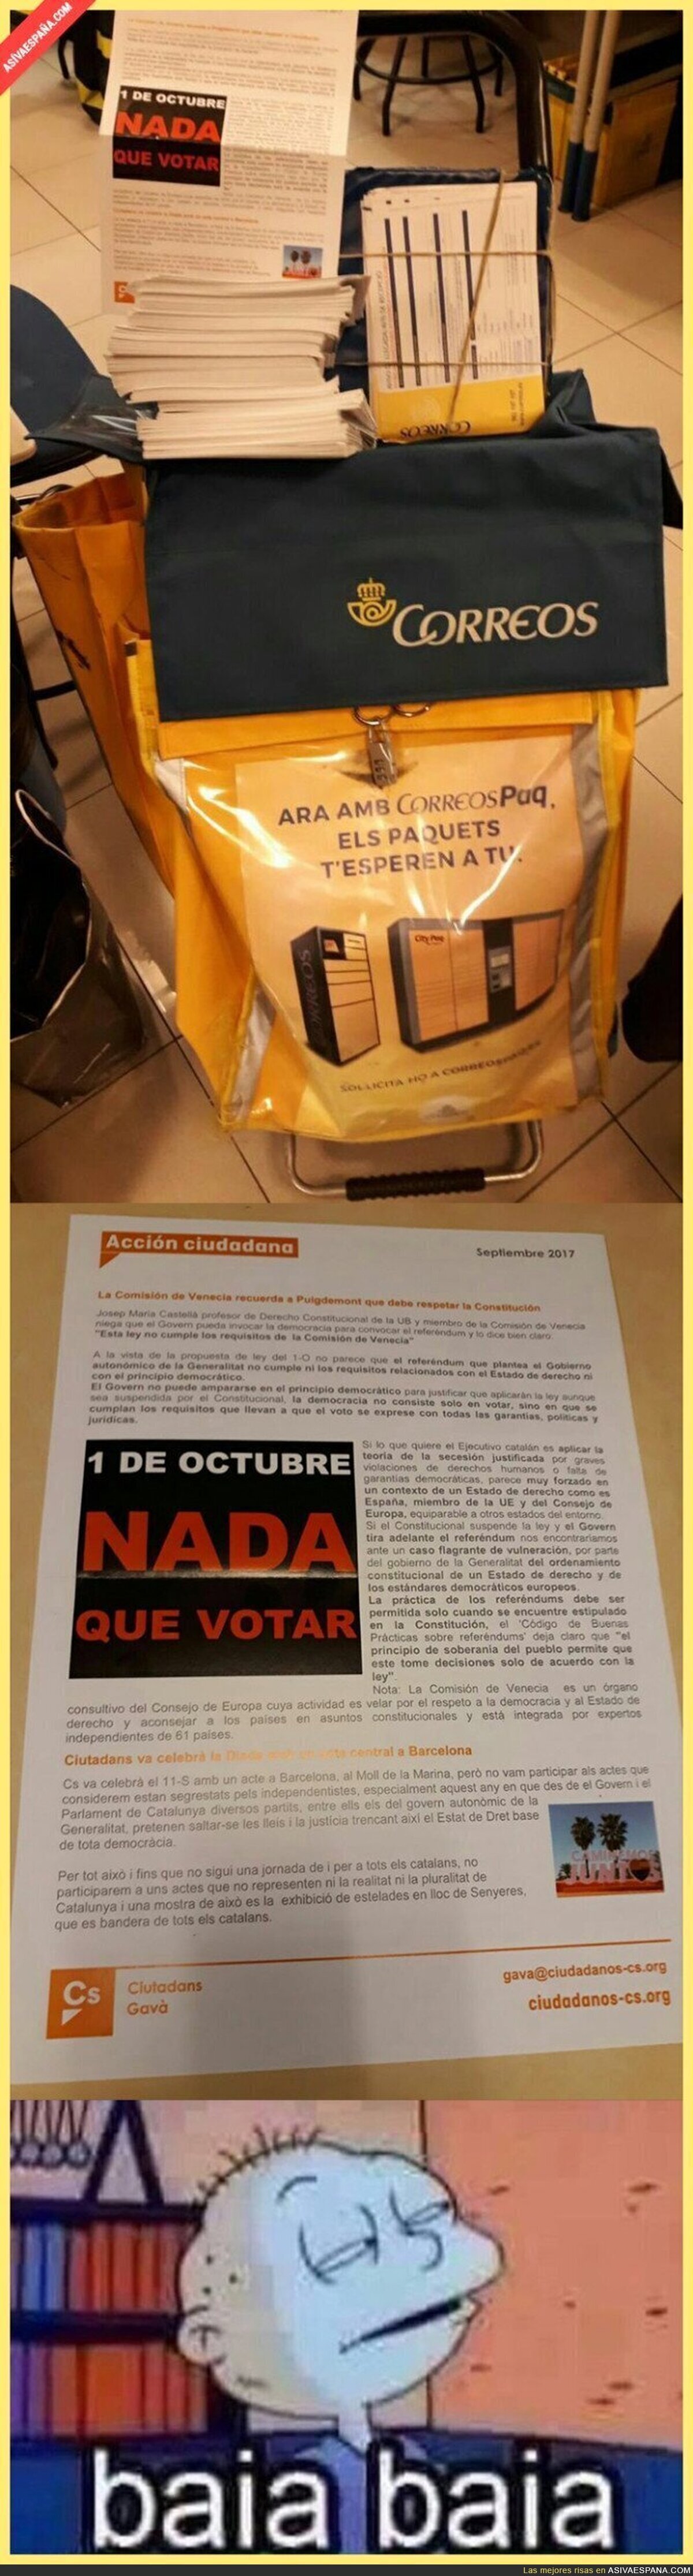 Pillan a 'Correos' mandando cartas de 'Ciudadanos' incitando a No votar en el referéndum